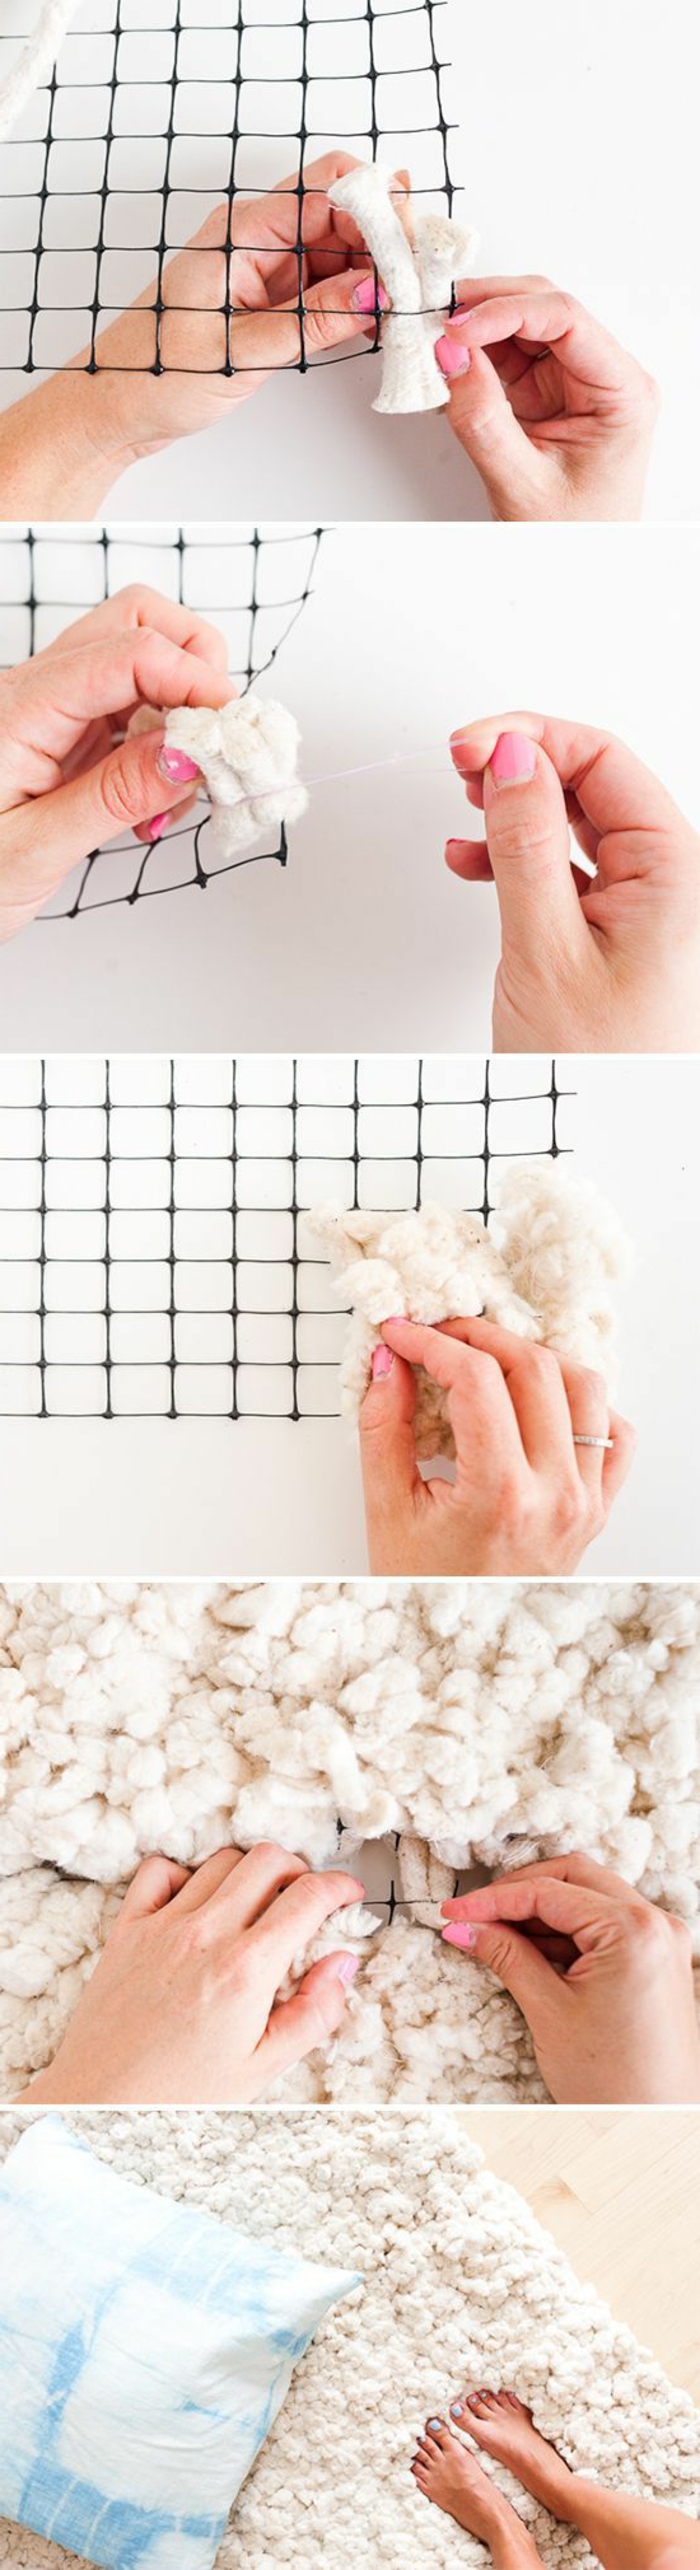 tutoriel fabrication tapis moelleux, technique création tapis avec laine et tapis antidérapant, idée activité manuelle hiver